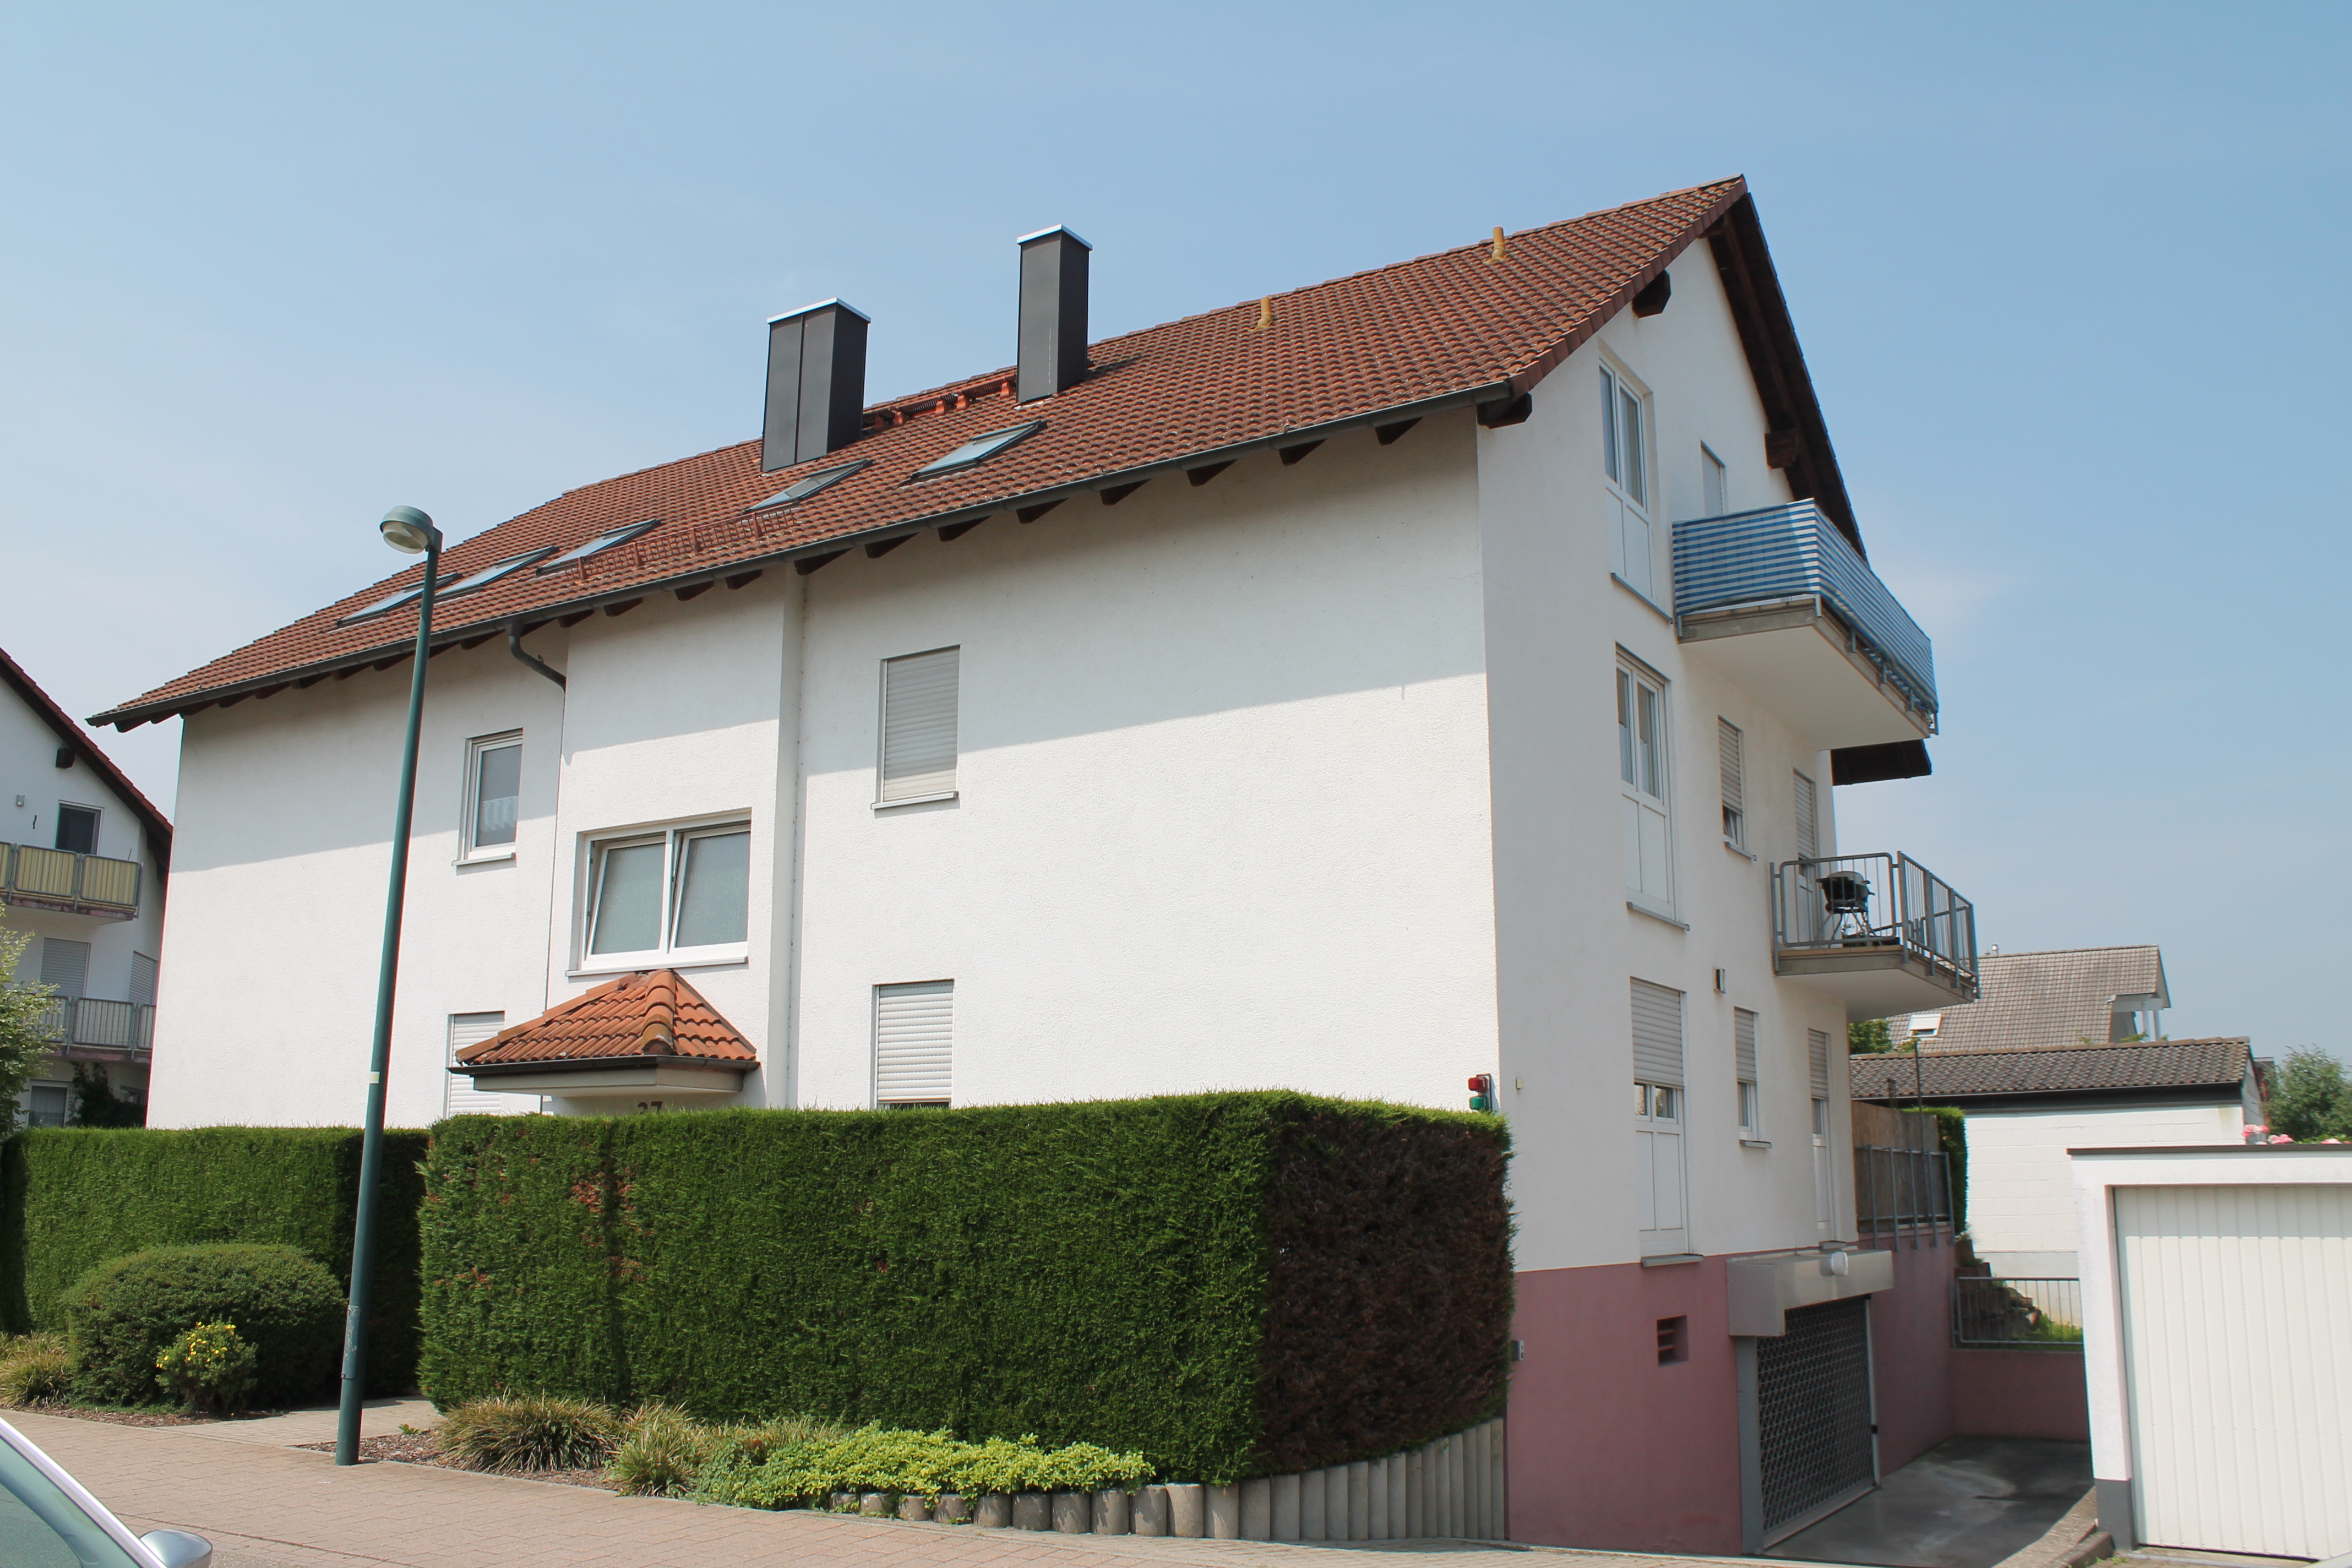 Gemütliche 2-Zimmer-Dachgeschoss-Wohnung mit Balkon und EBK in Bühl